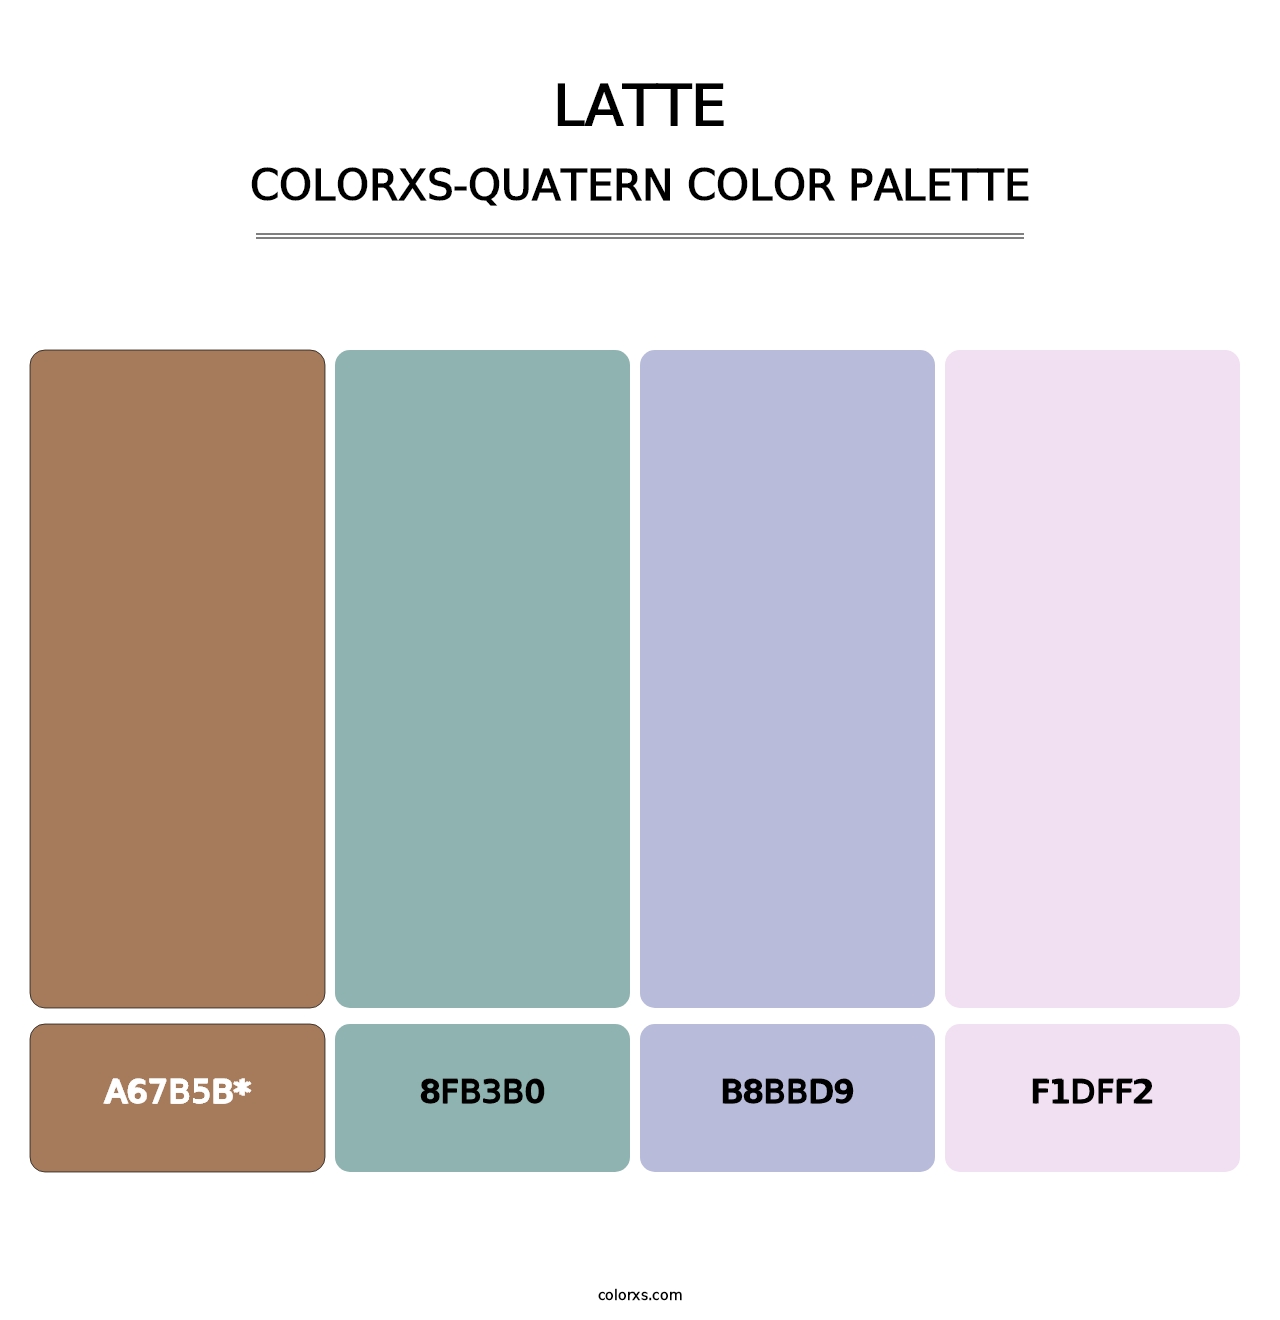 Latte - Colorxs Quatern Palette